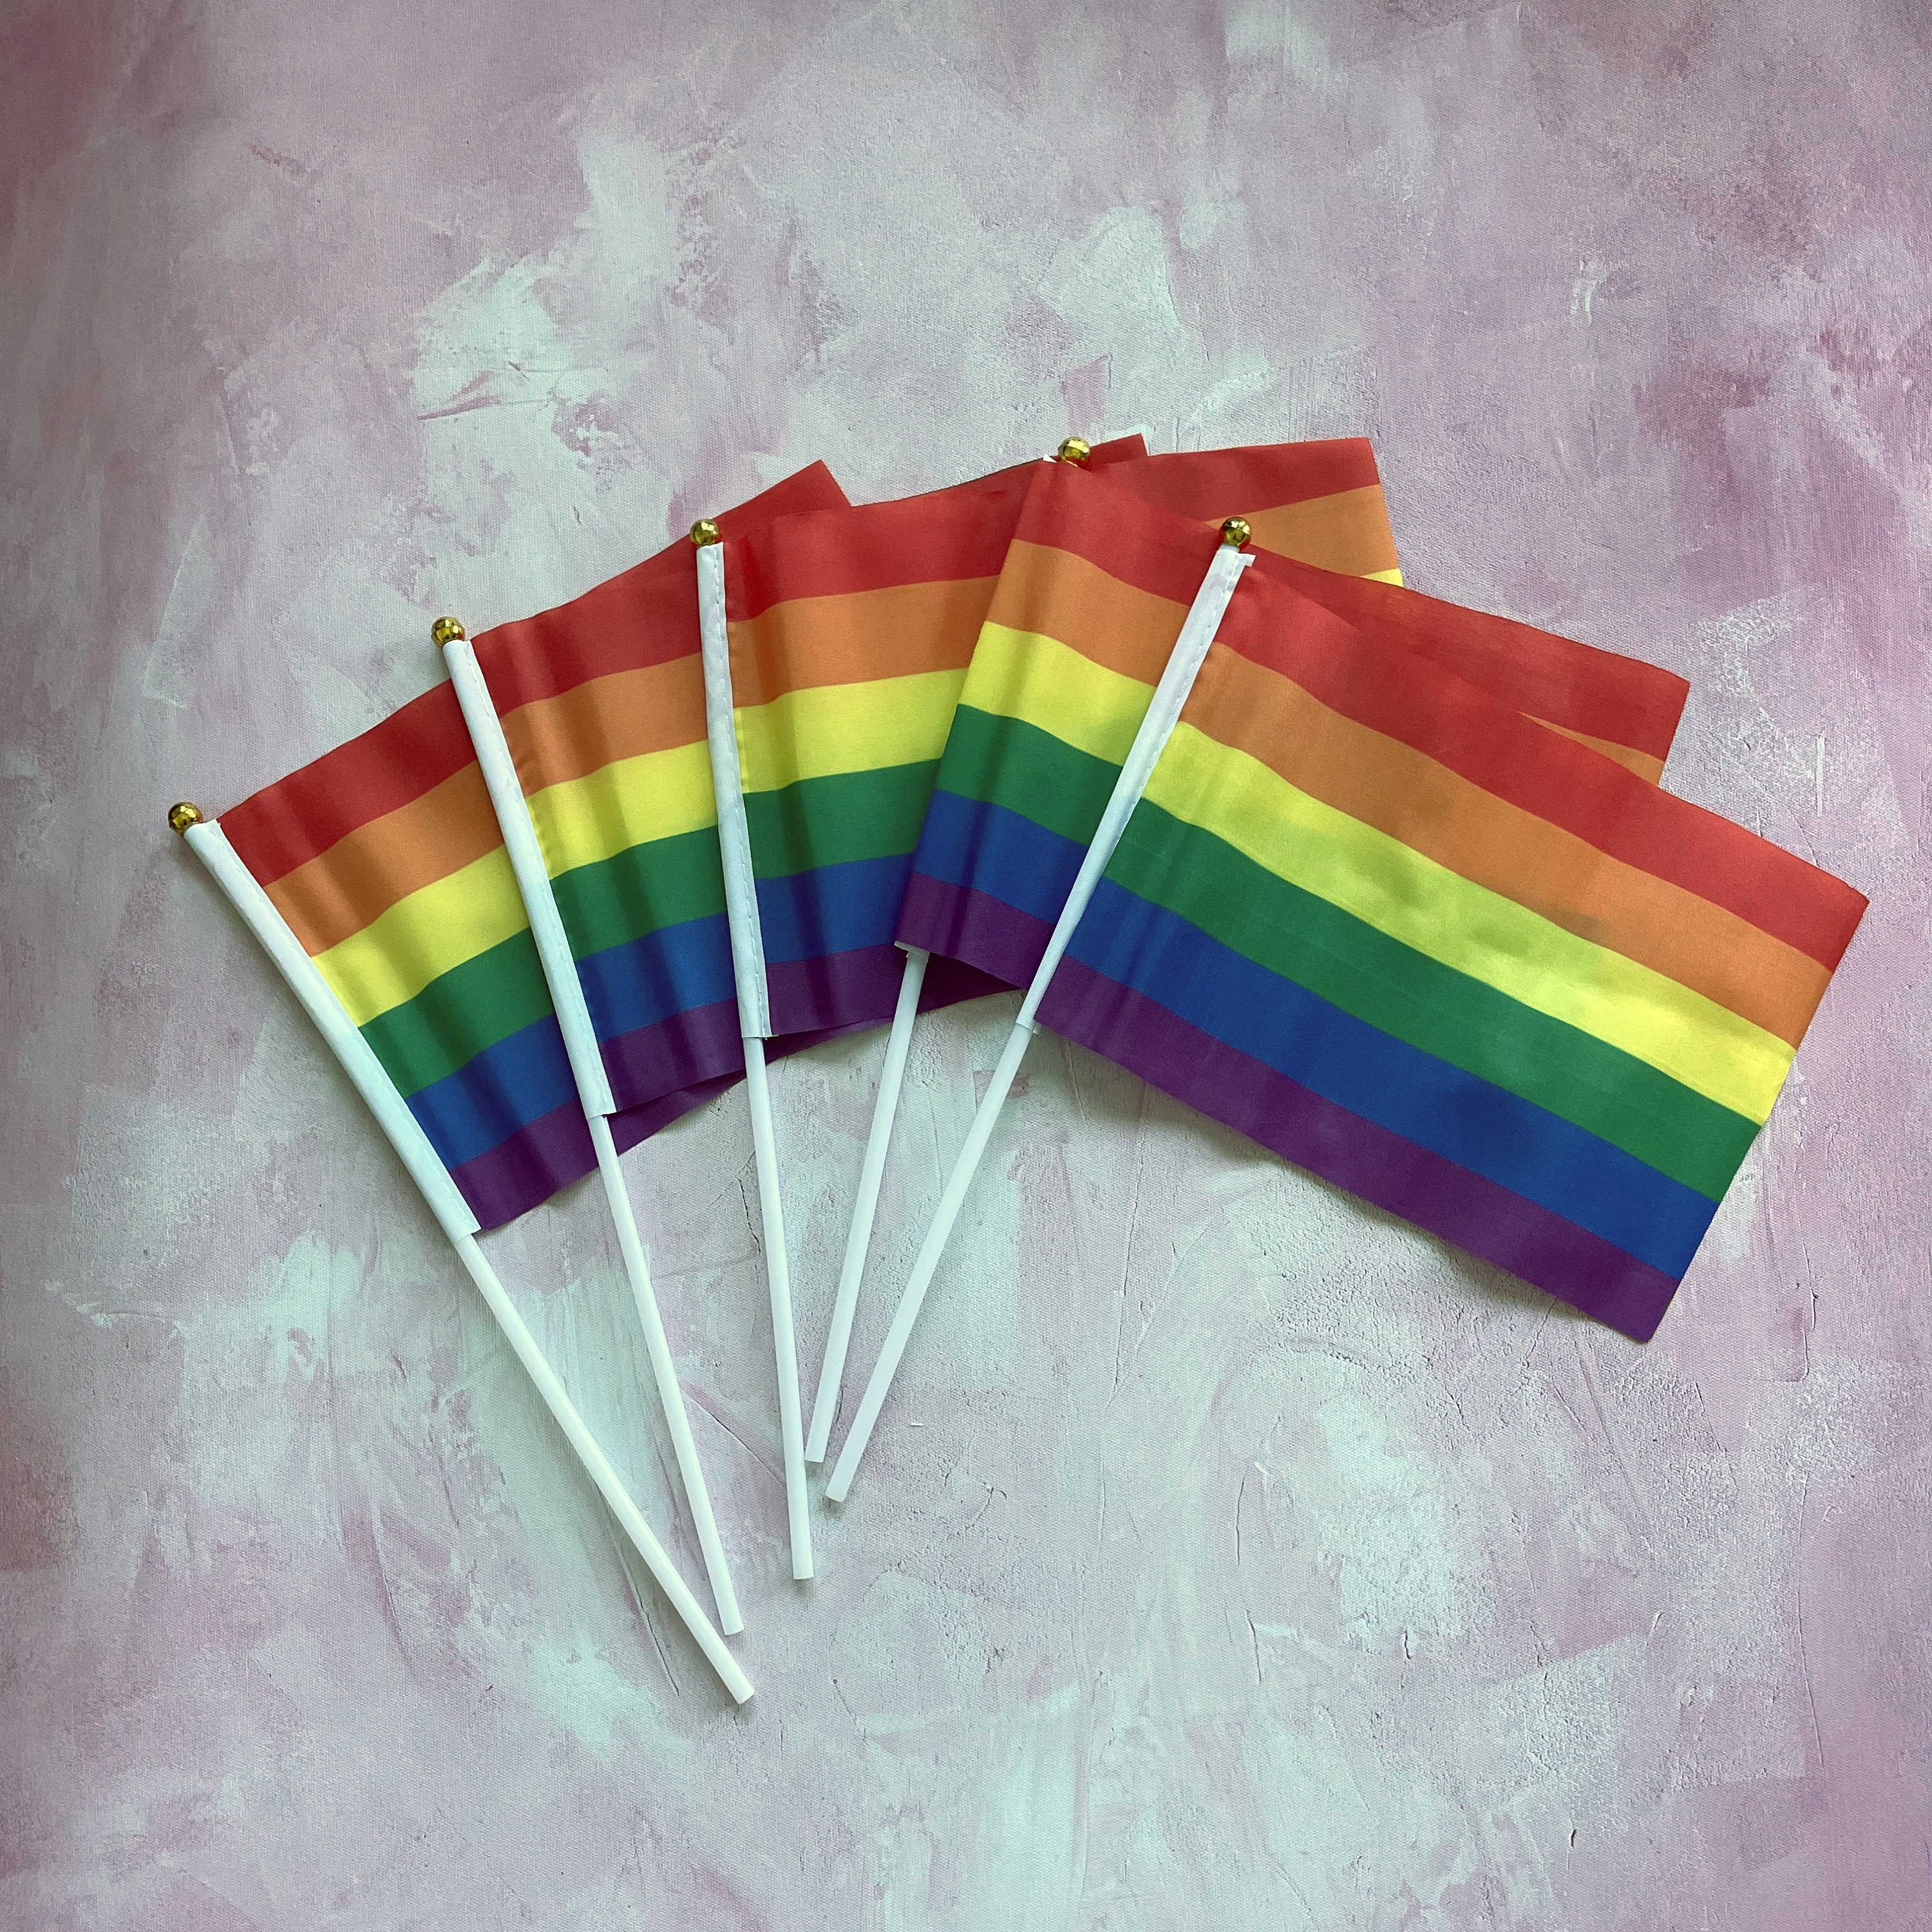 Patch brodé smiley drapeau gay, transgenre, lesbienne, pansexuel, marche  des fiertés LGBTQIA, écusson thermocollant 5,6 cm